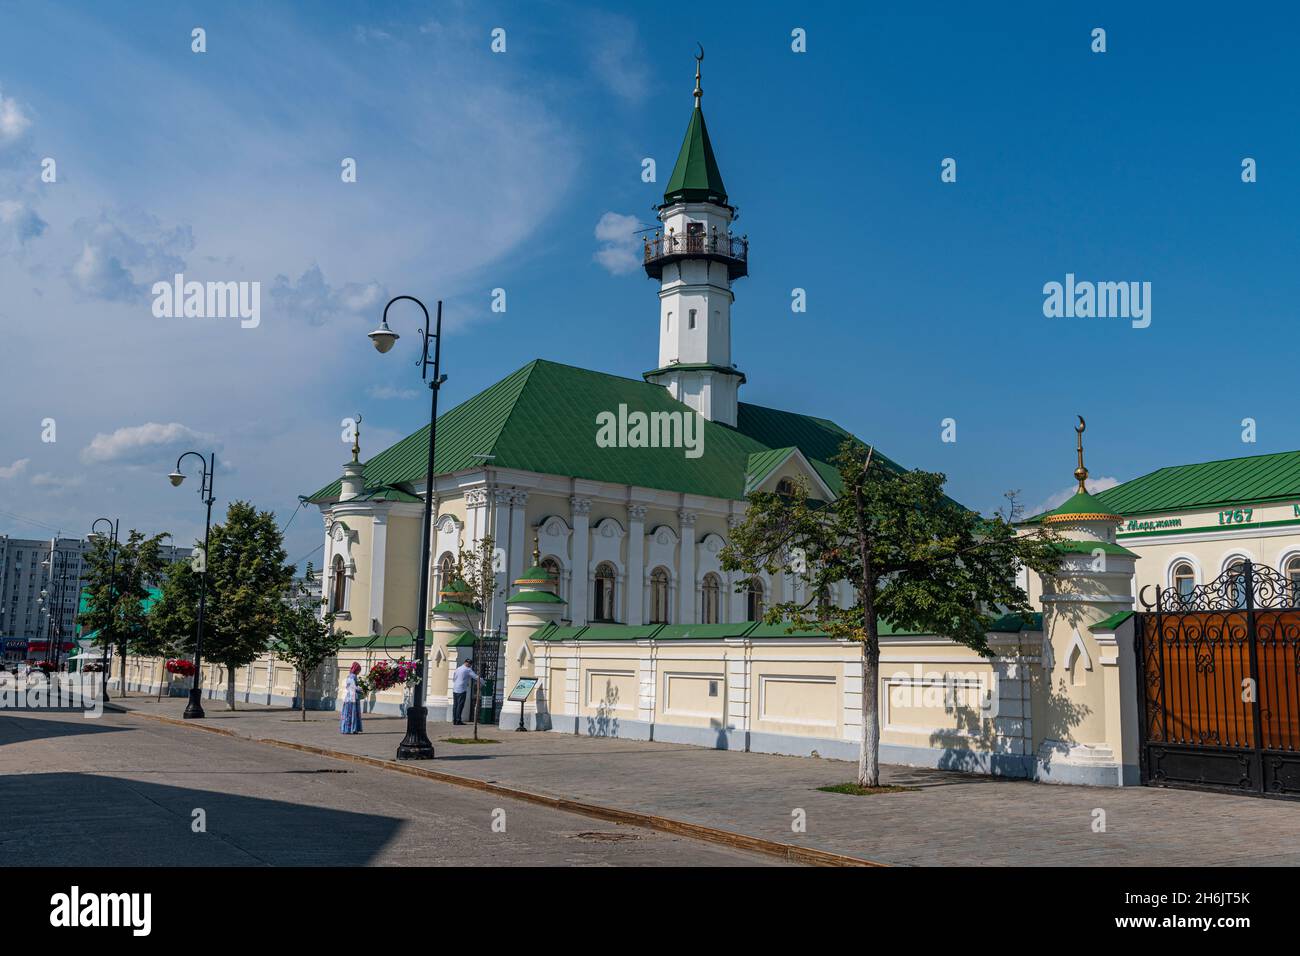 Vieux quartier du Tartastan, Kazan, République du Tatarstan, Russie, Europe Banque D'Images